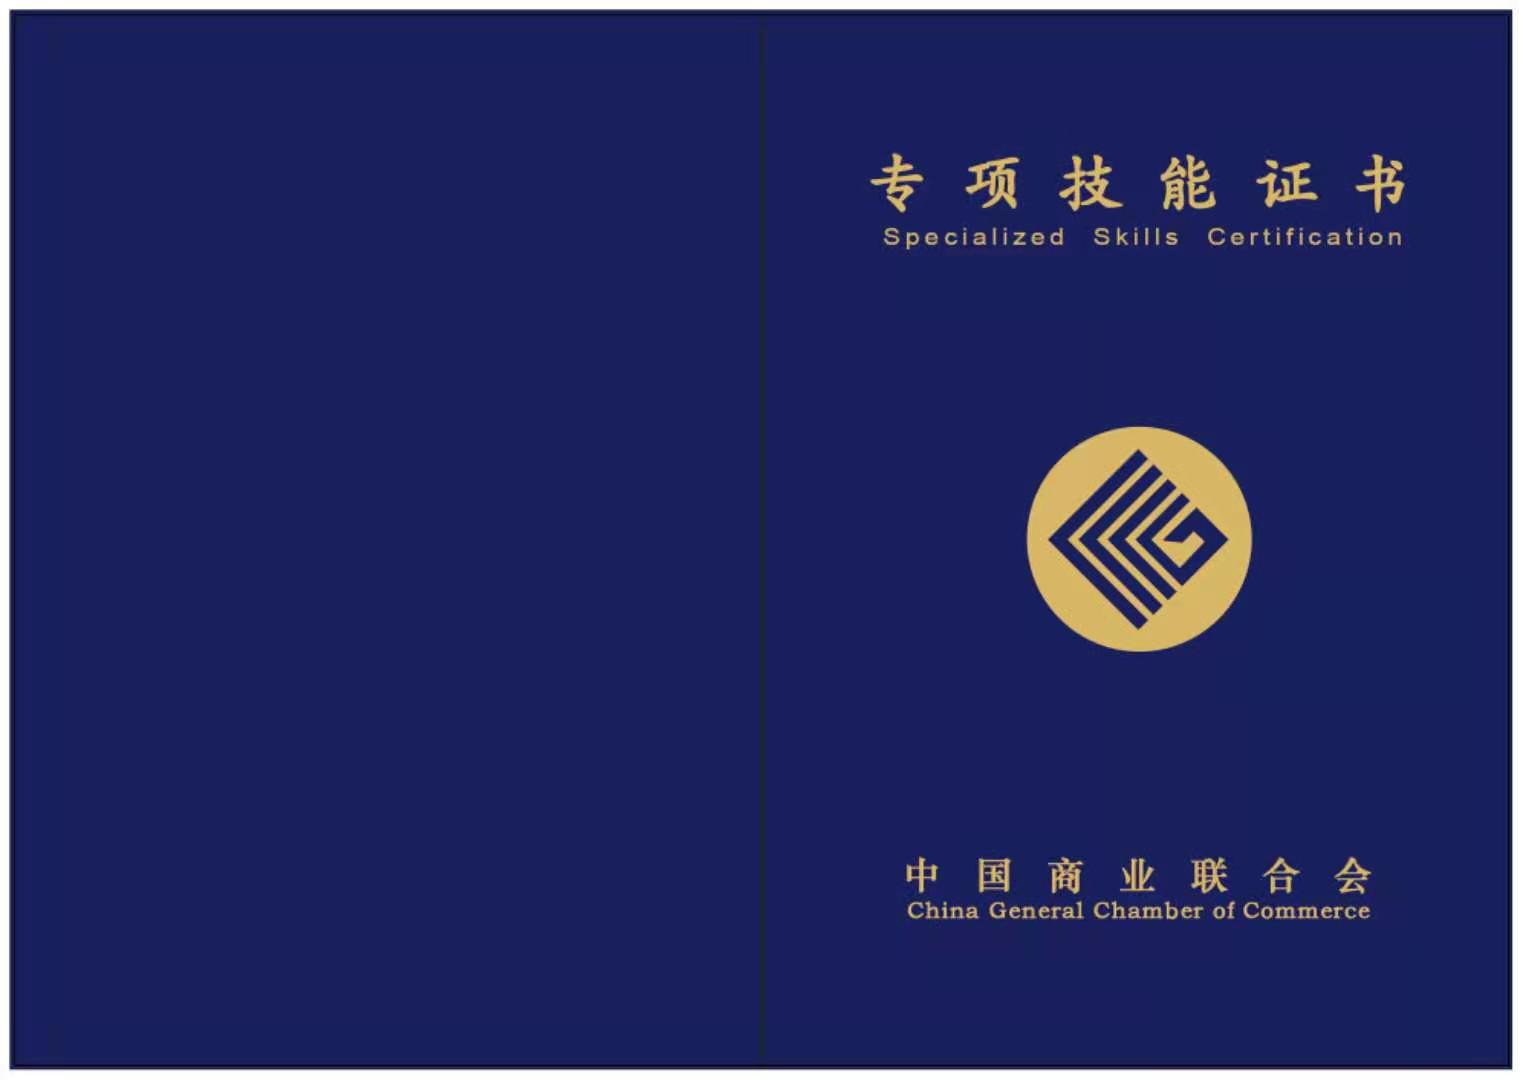 中国商业联合会商业职业技能鉴定指导中心证书报名